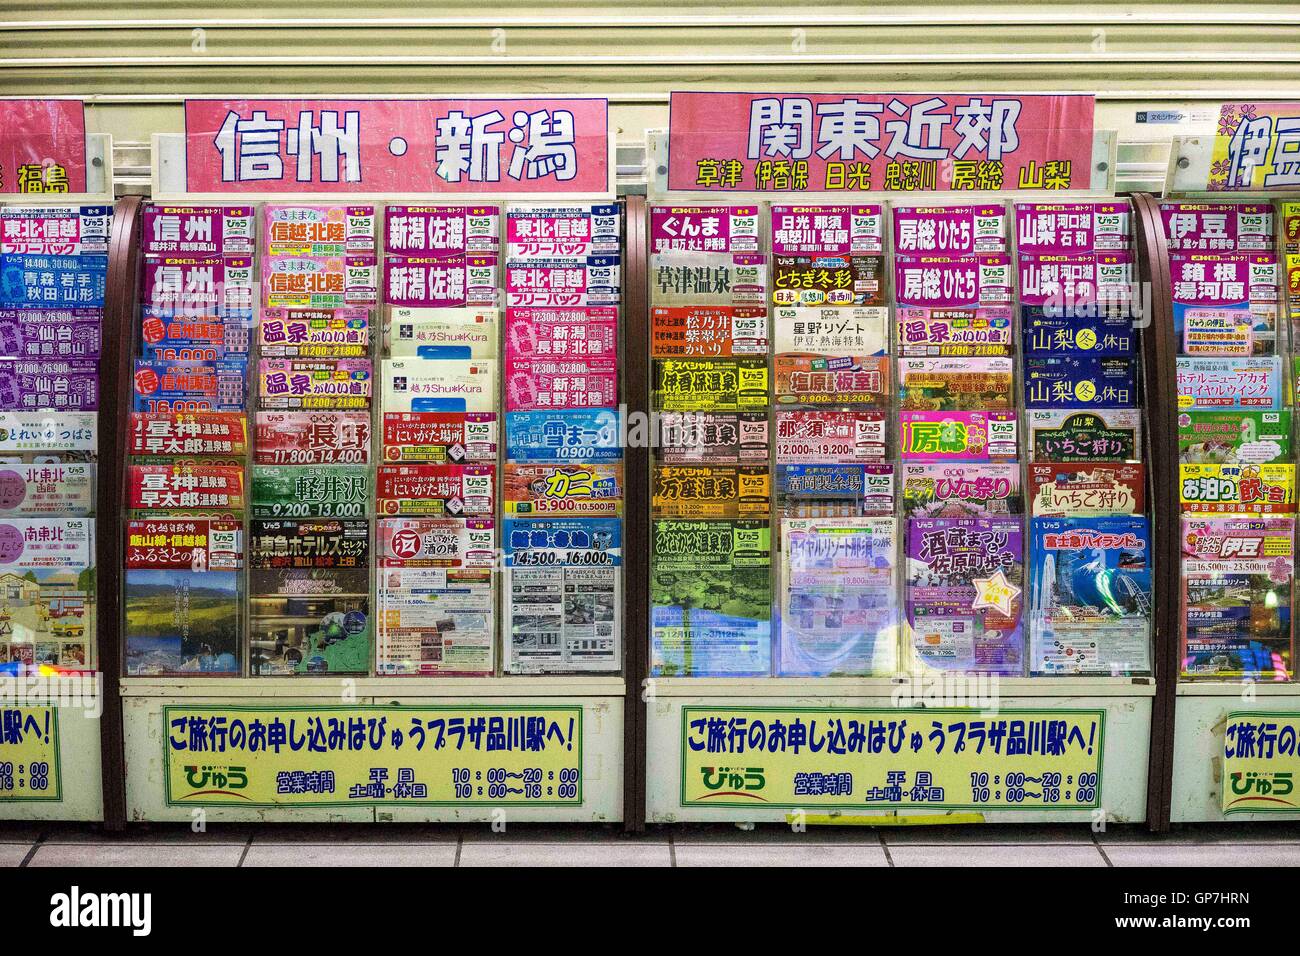 Book stall at shinagawa station, tokyo, japan Stock Photo